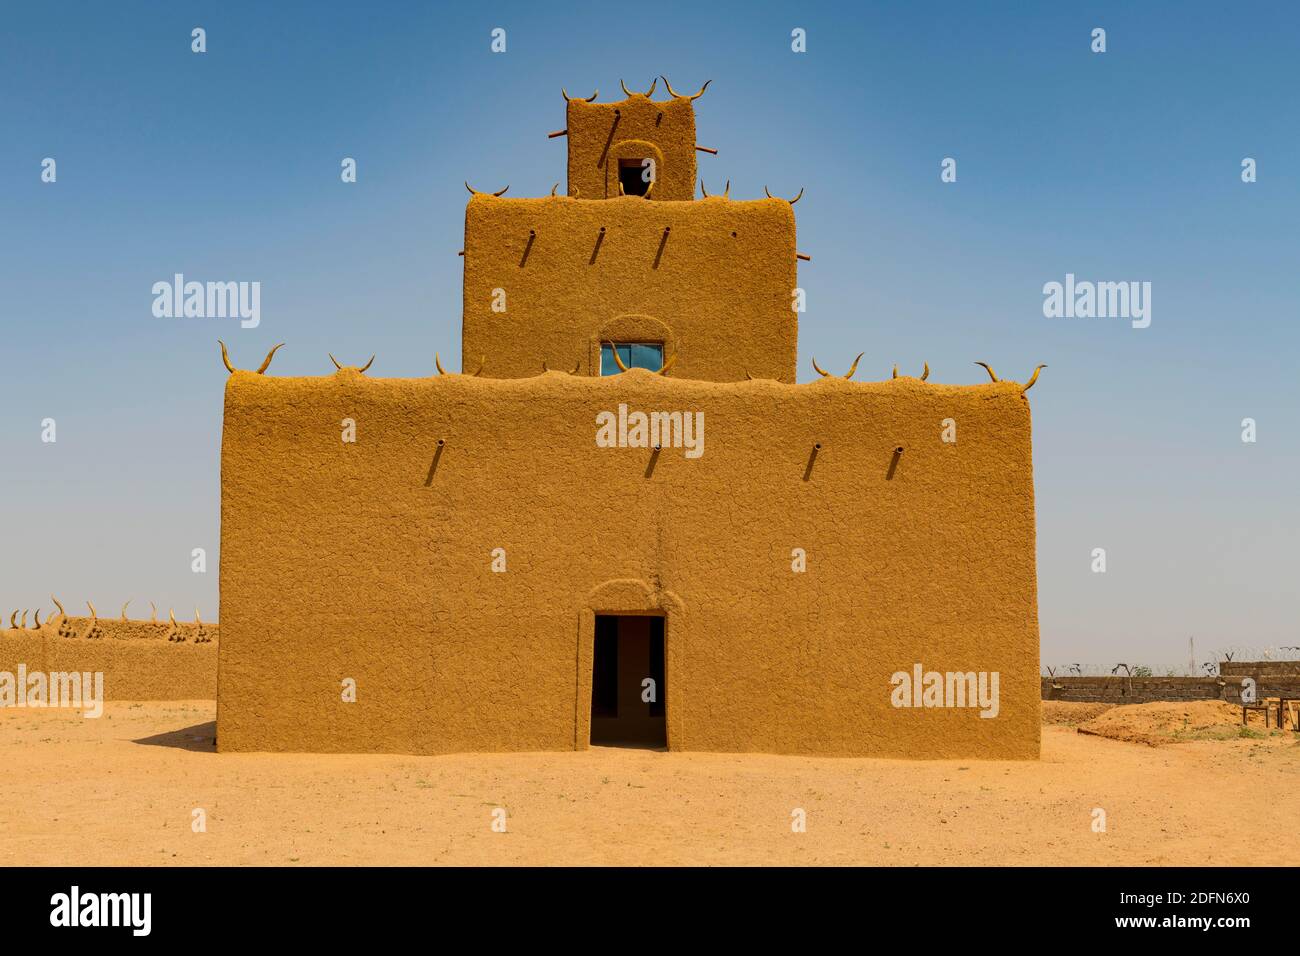 Maison traditionnelle, loam construction, Agadez, Niger Banque D'Images